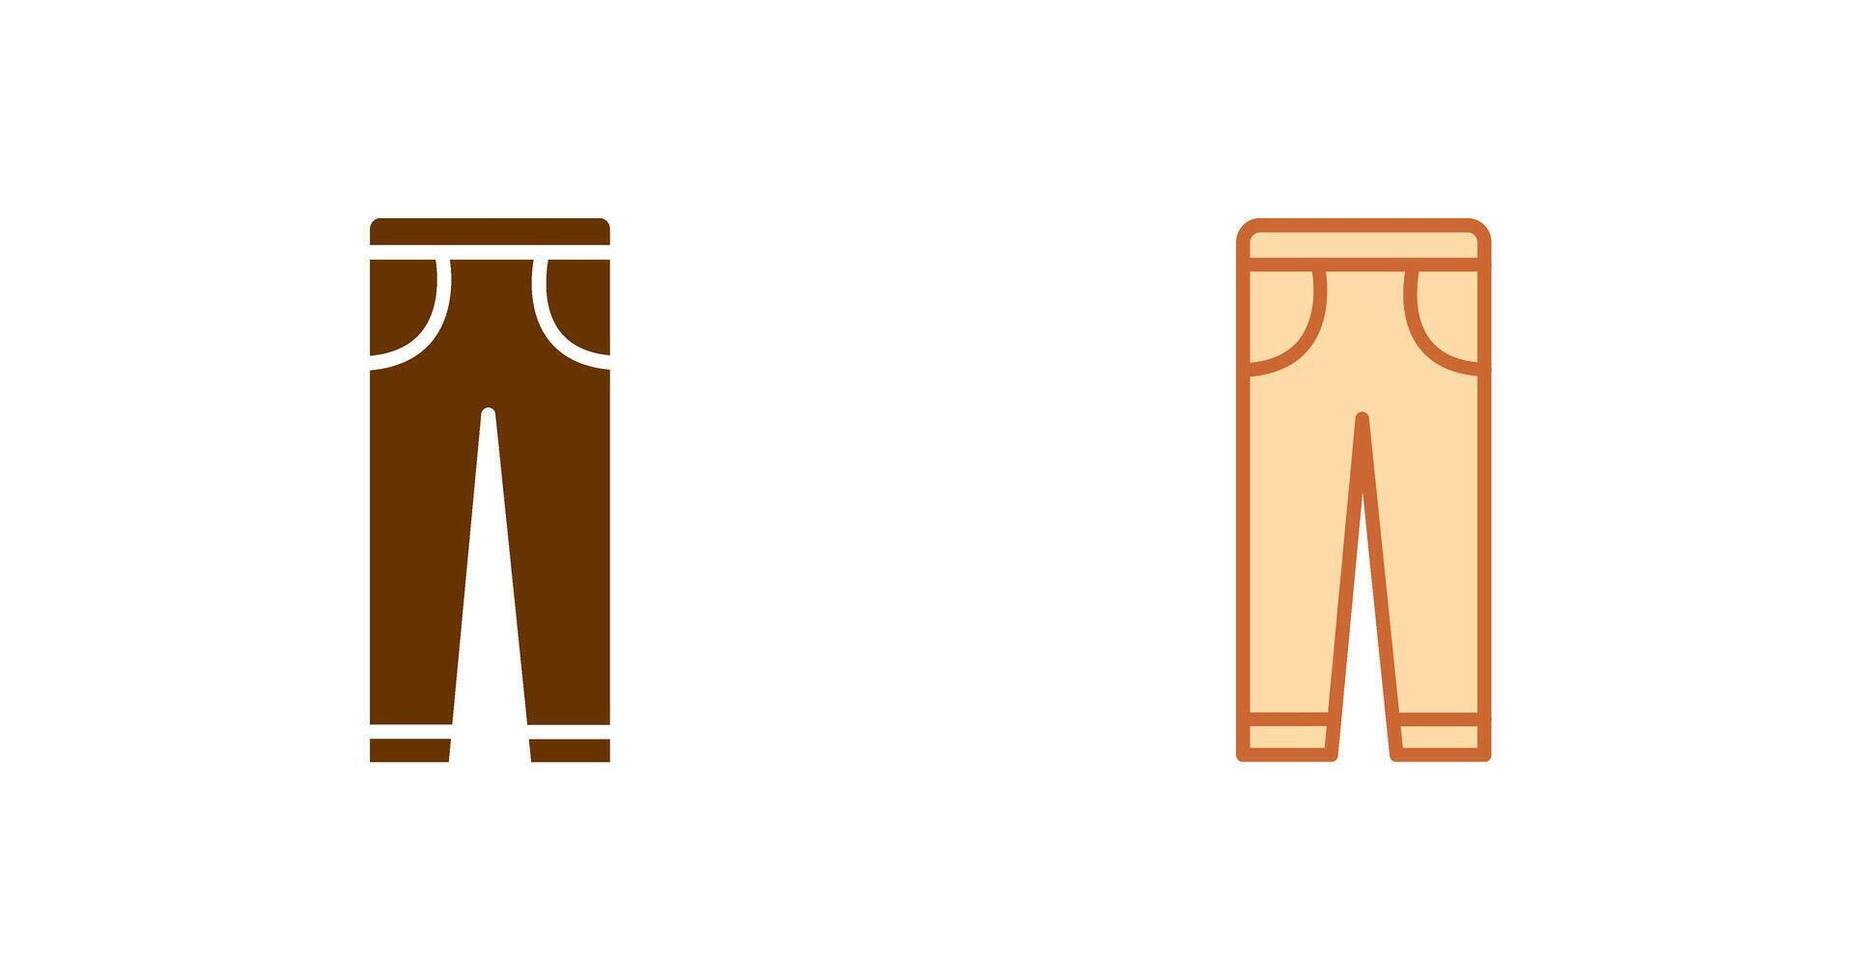 design de ícone de calças vetor